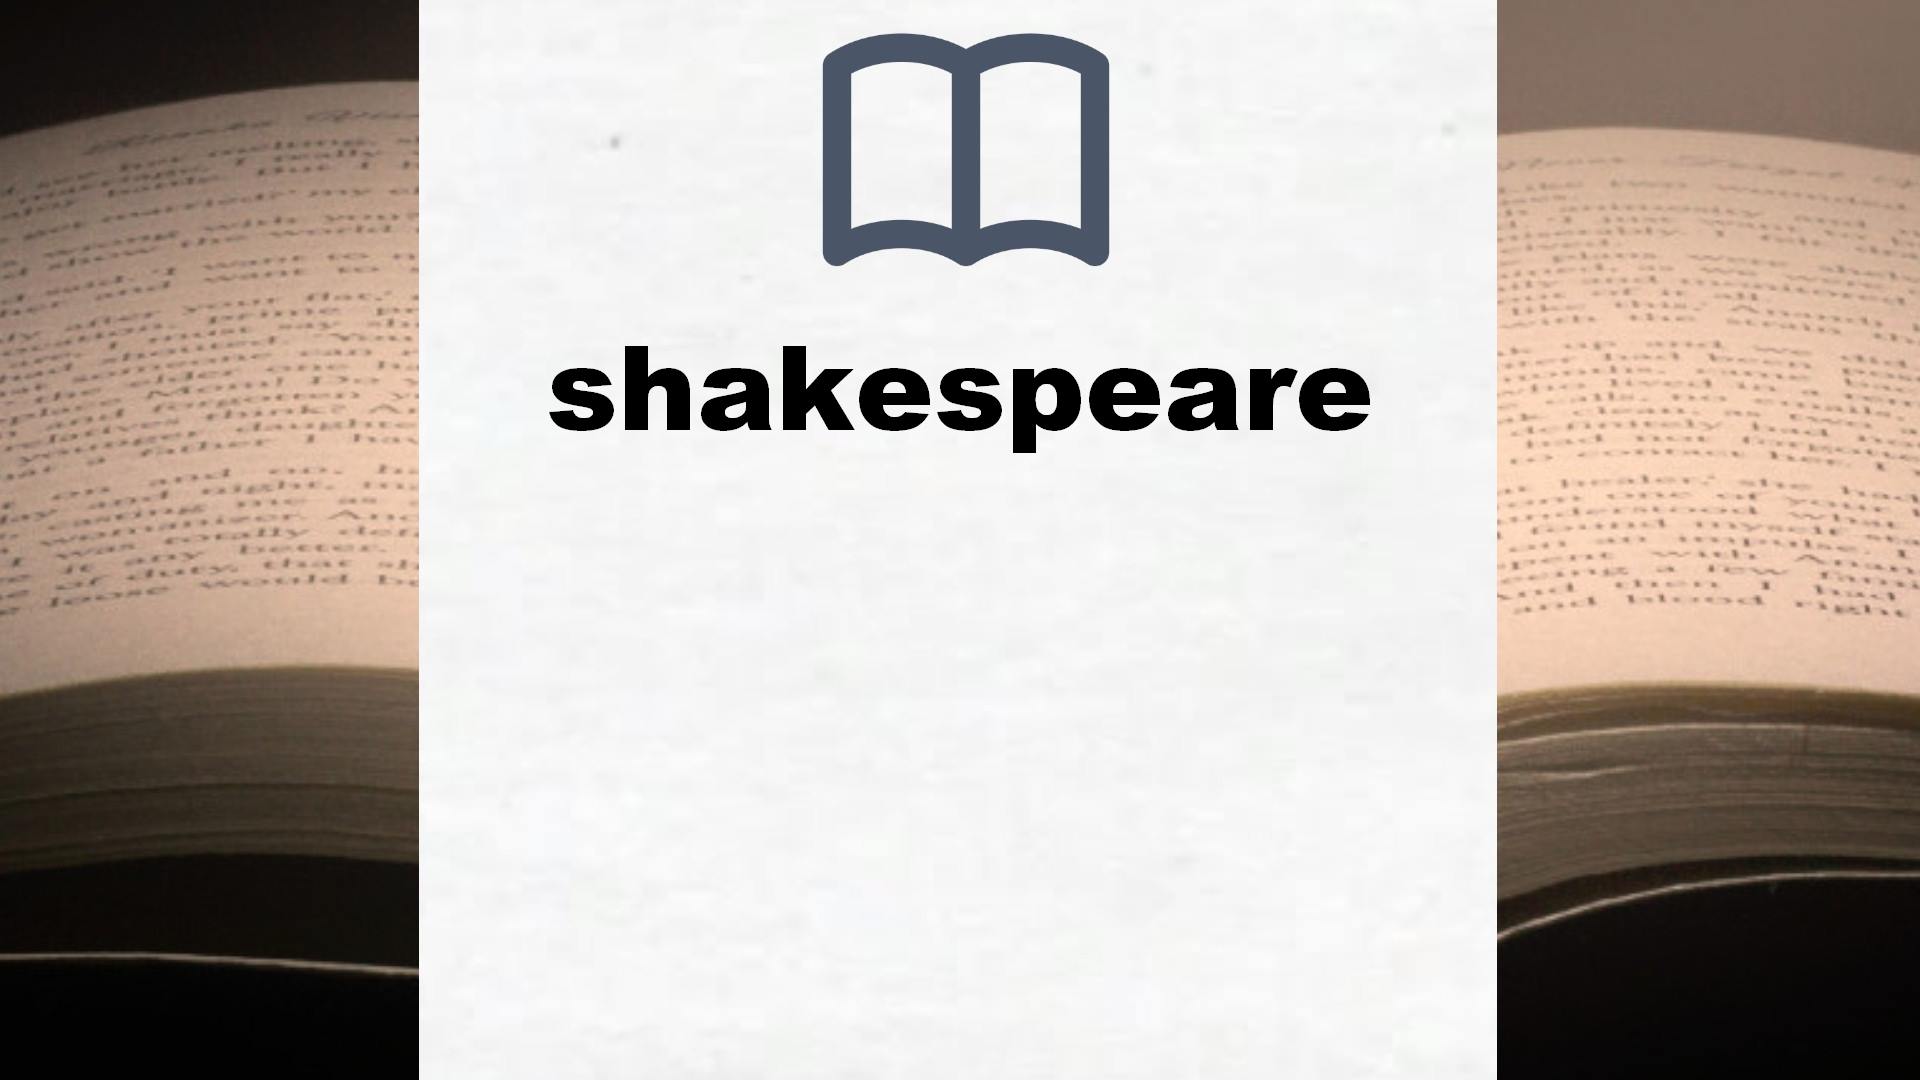 Libros sobre shakespeare